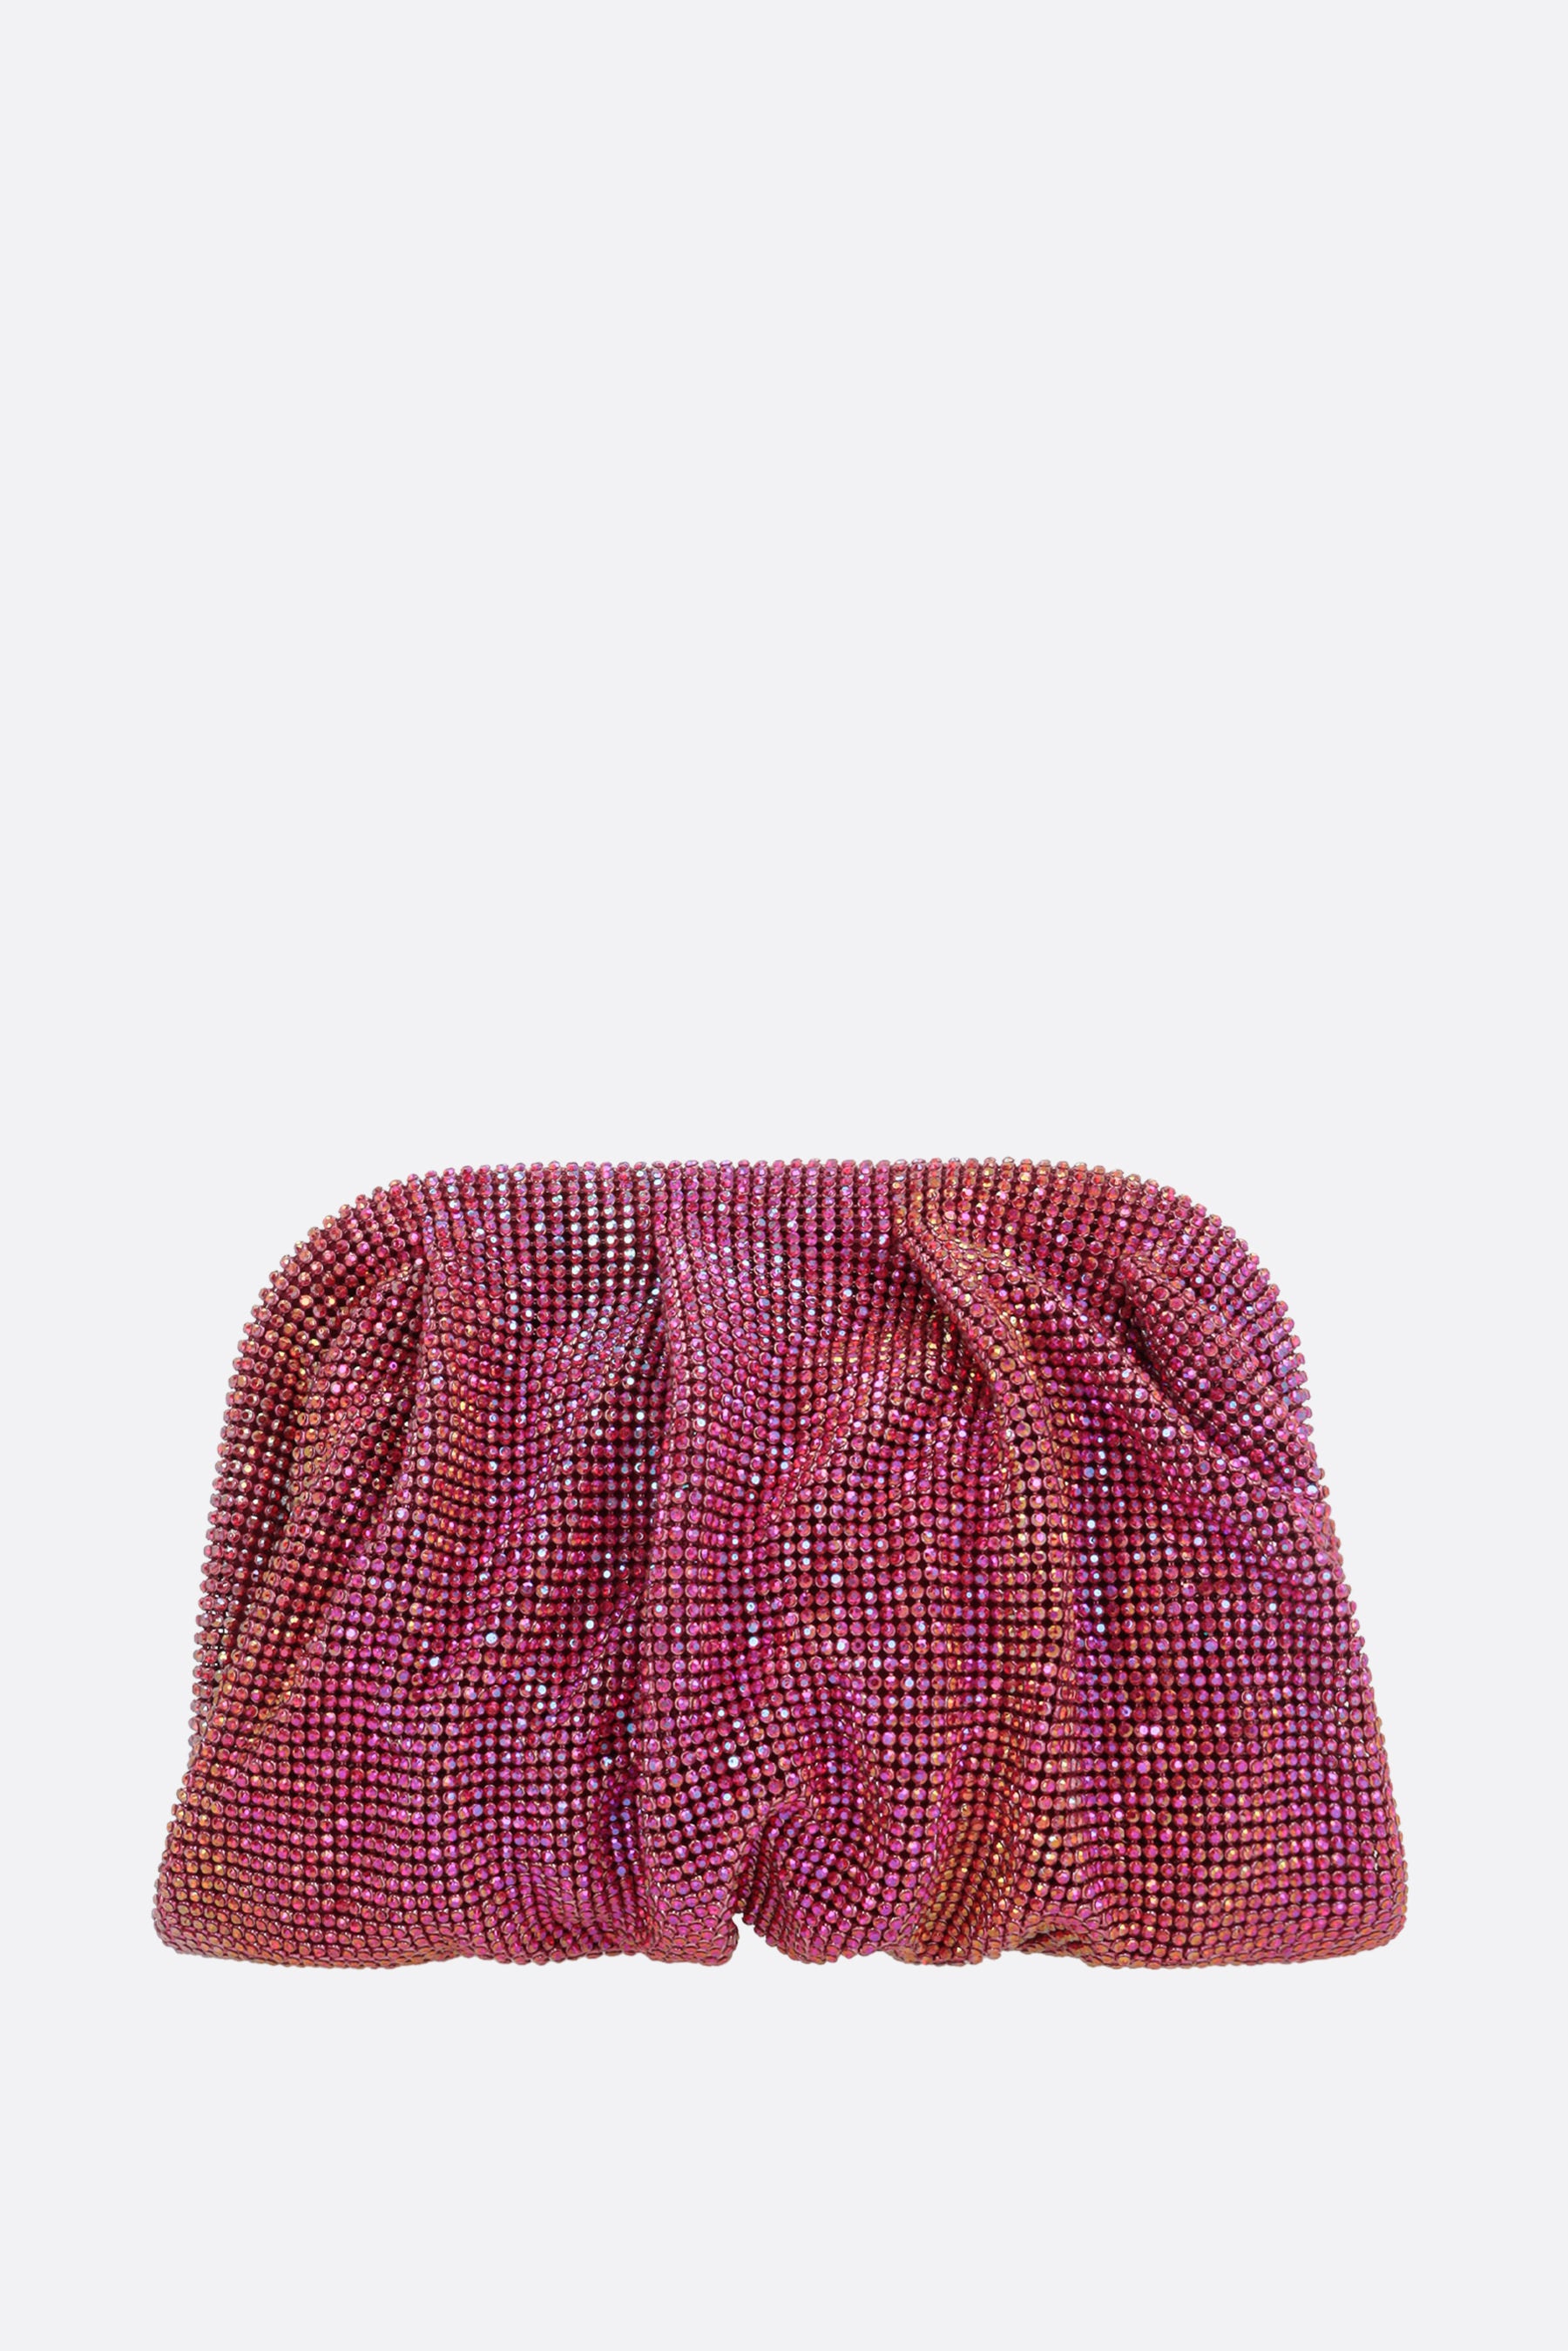 Venus La Petite crystal-embellished metal mesh clutch